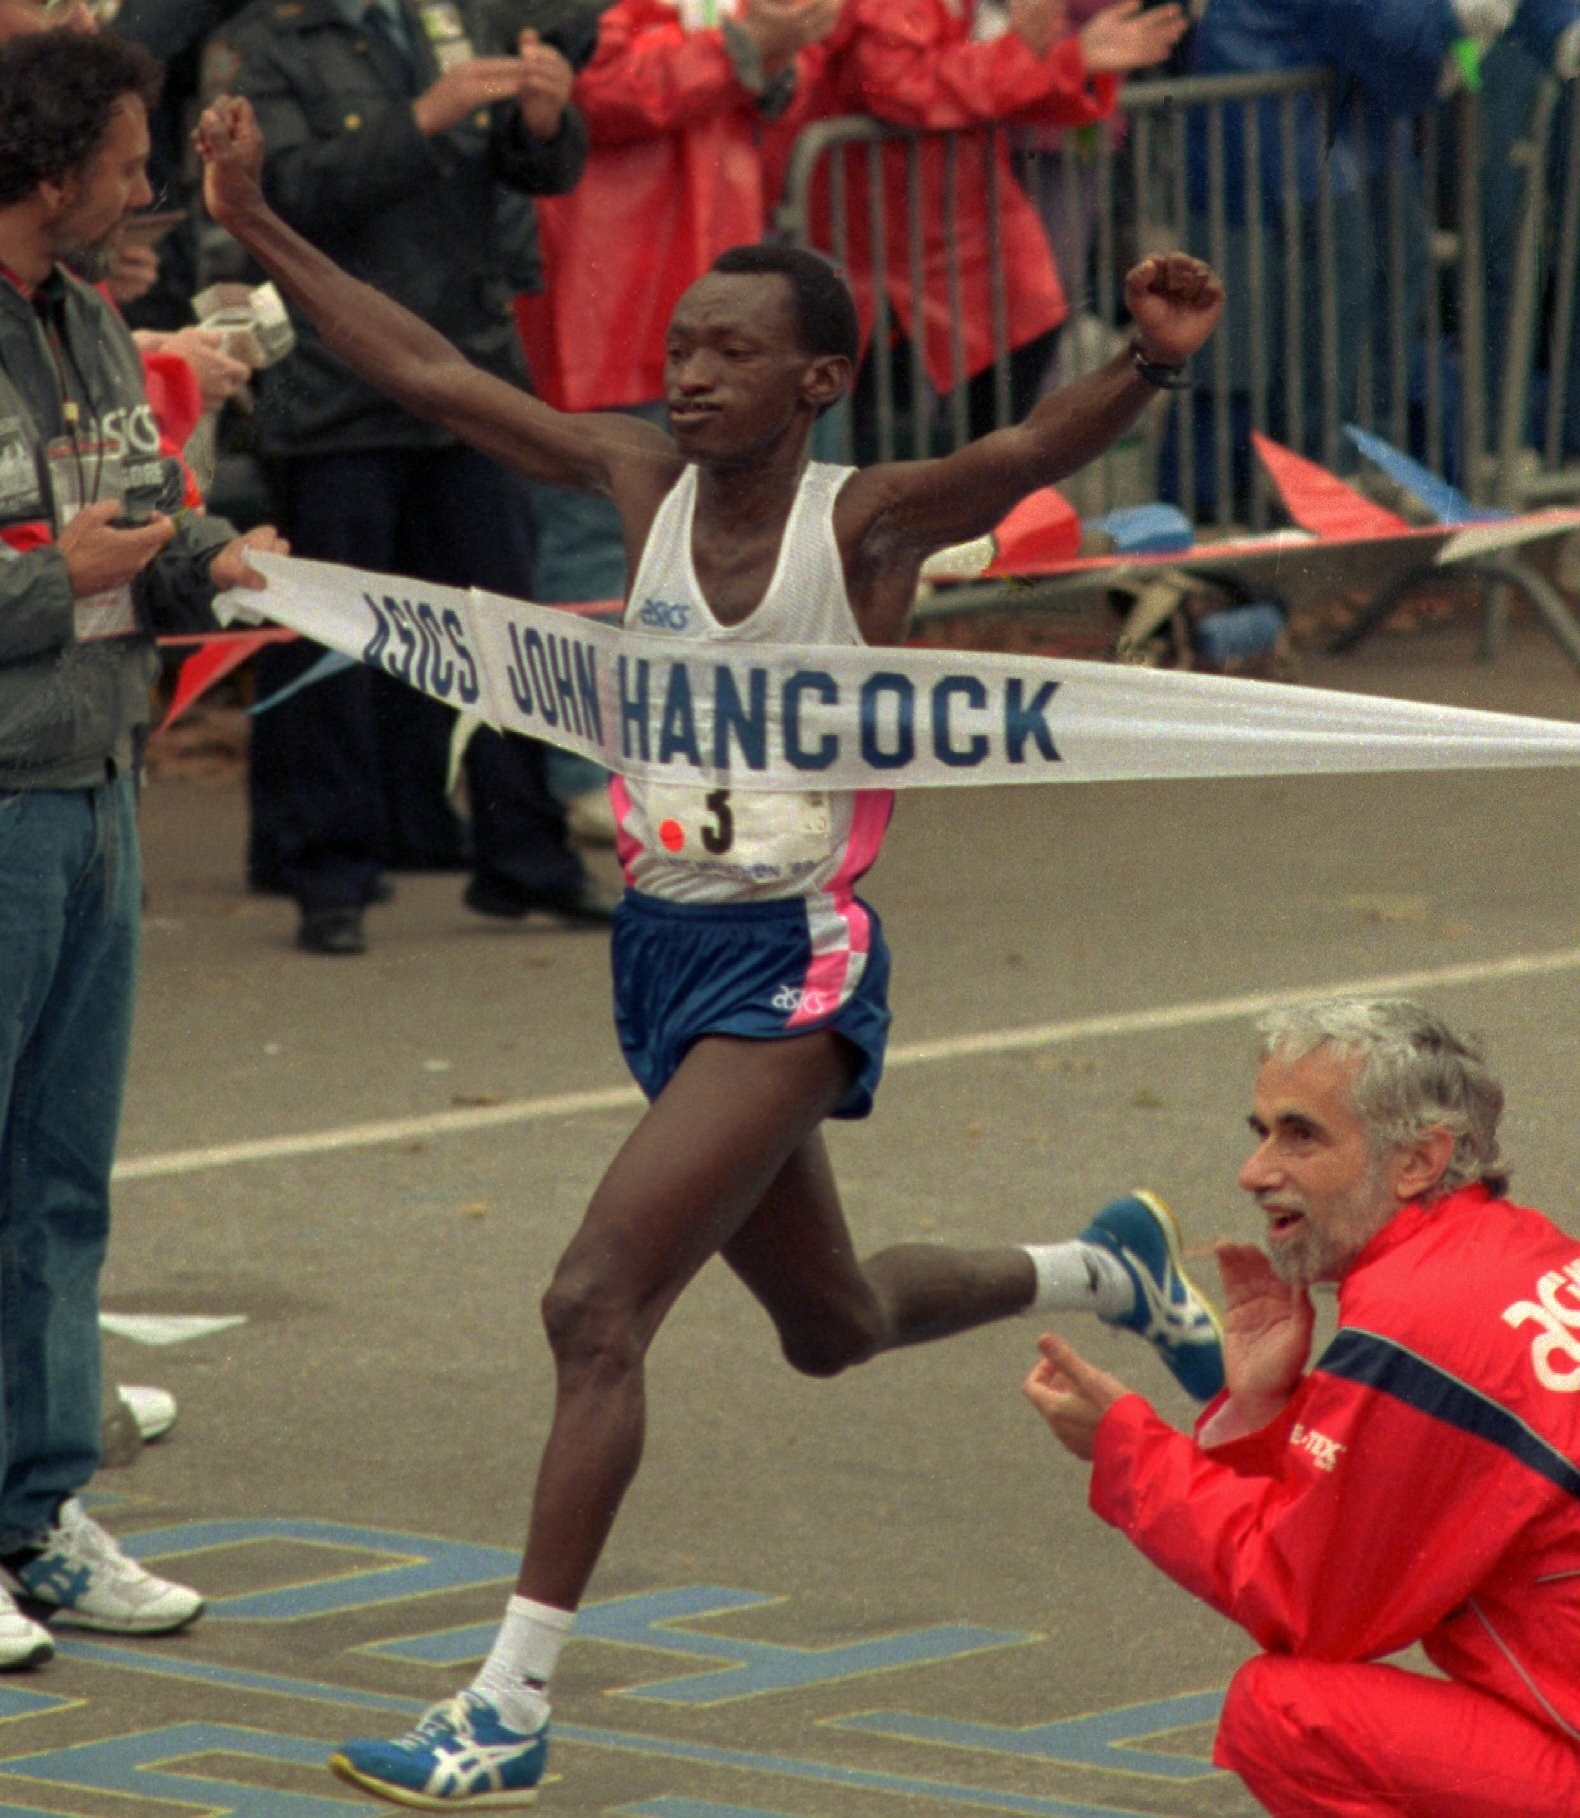 NYC Marathon 2000 — barbera CREATIVE